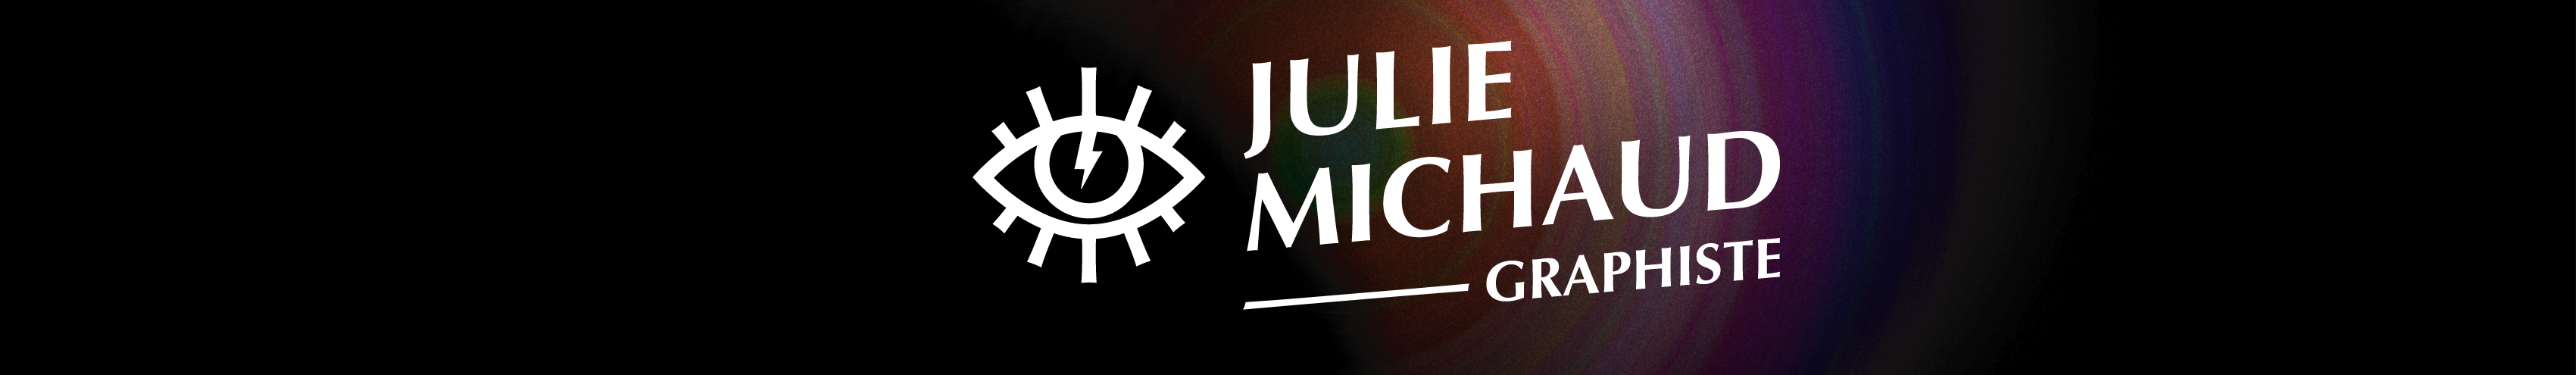 Julie Michaud's profile banner